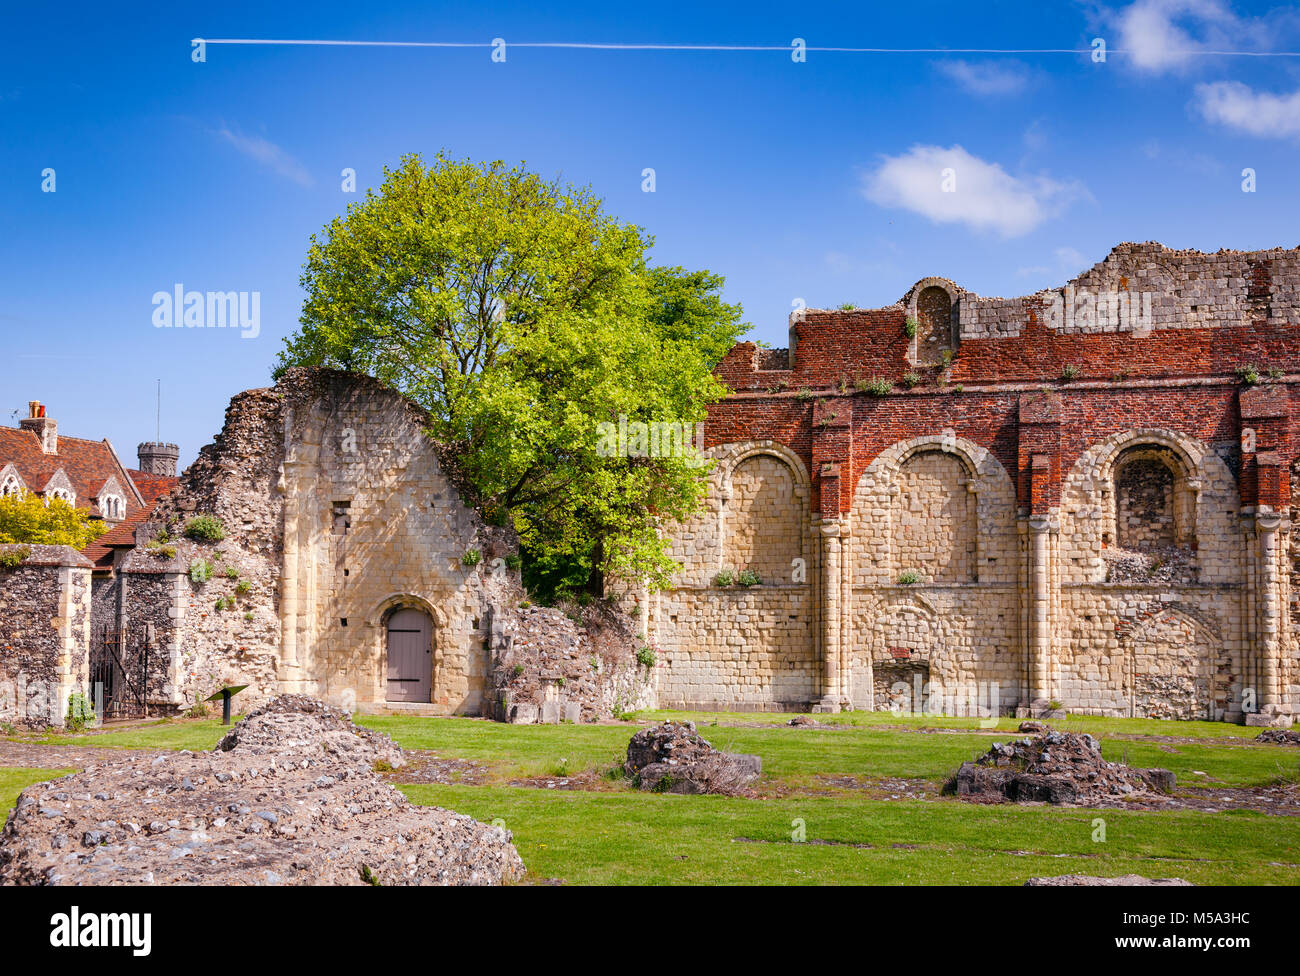 Ruines de St Augustine's Abbey, le plus ancien monastère bénédictin à Canterbury, Kent le Sud de l'Angleterre, Royaume-Uni. Site du patrimoine mondial de l'UNESCO Banque D'Images